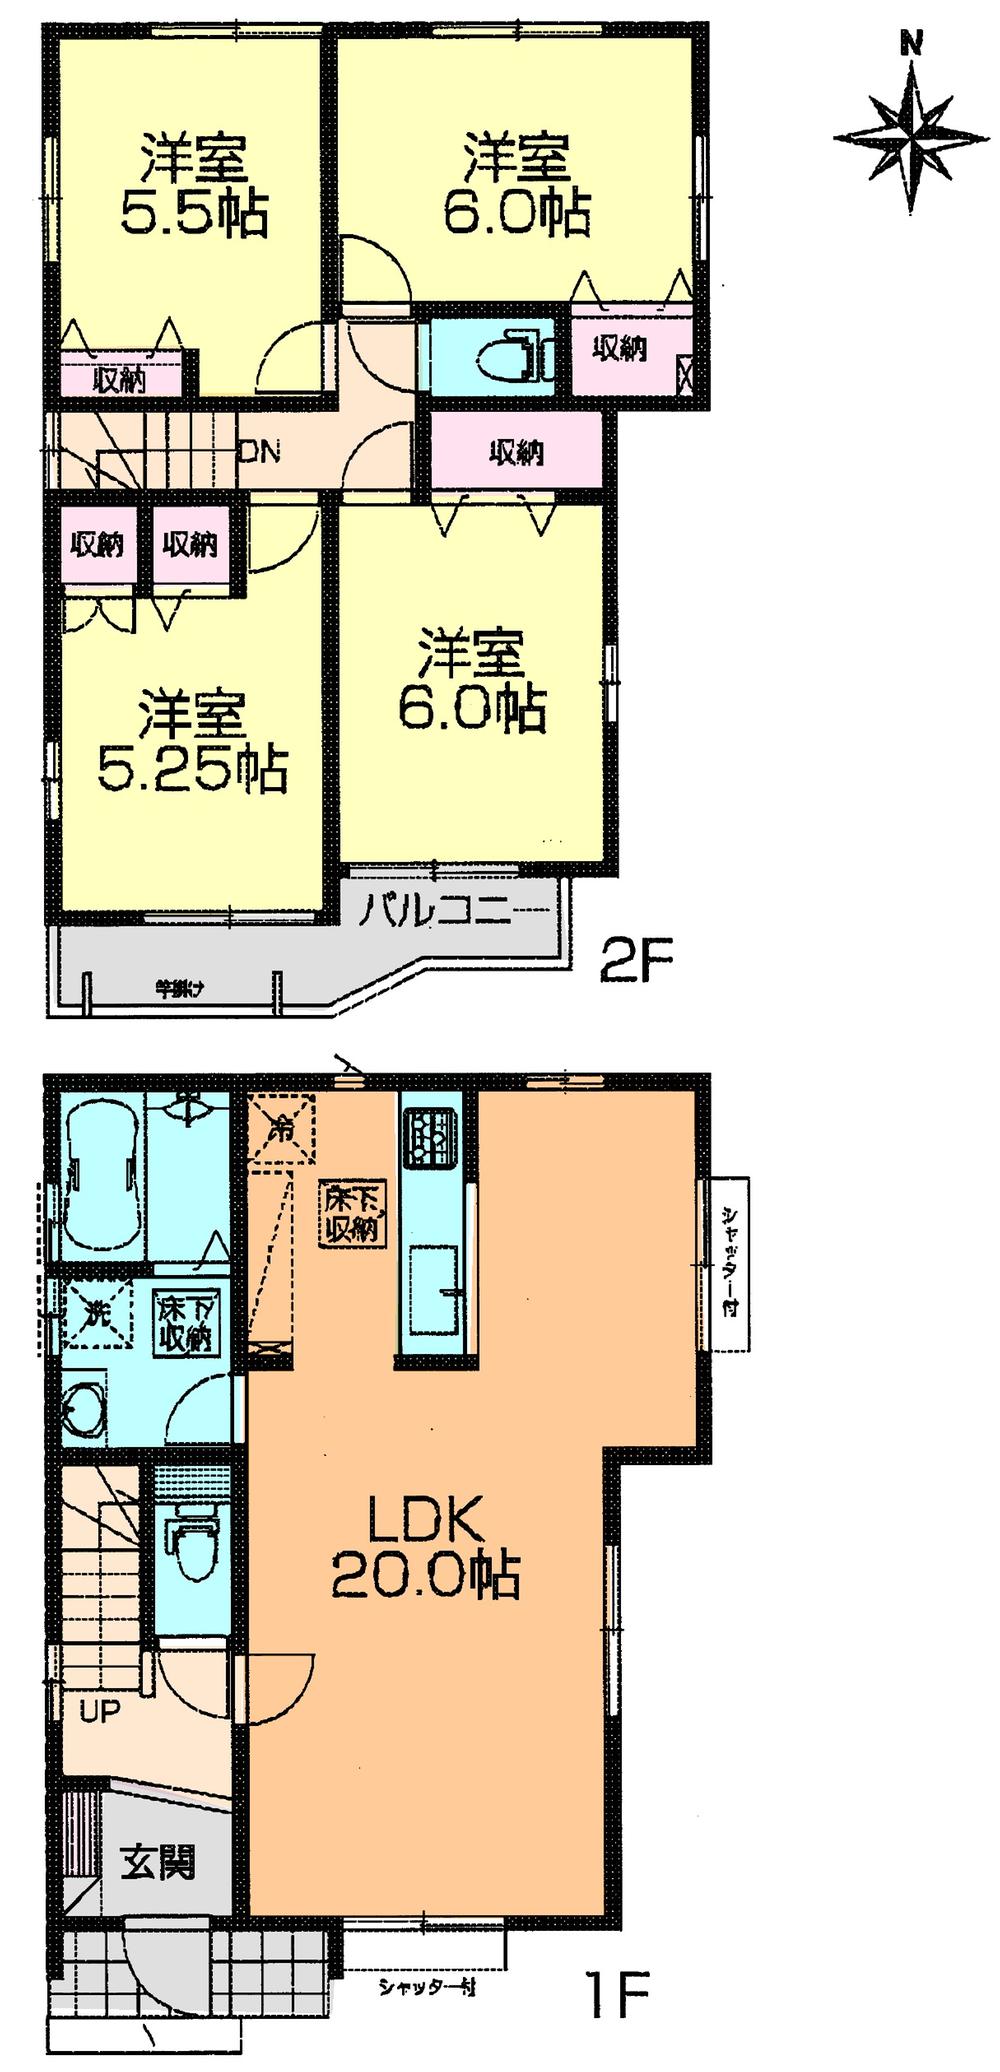 Floor plan. 35,900,000 yen, 4LDK, Land area 135.45 sq m , Building area 135.45 sq m floor plan